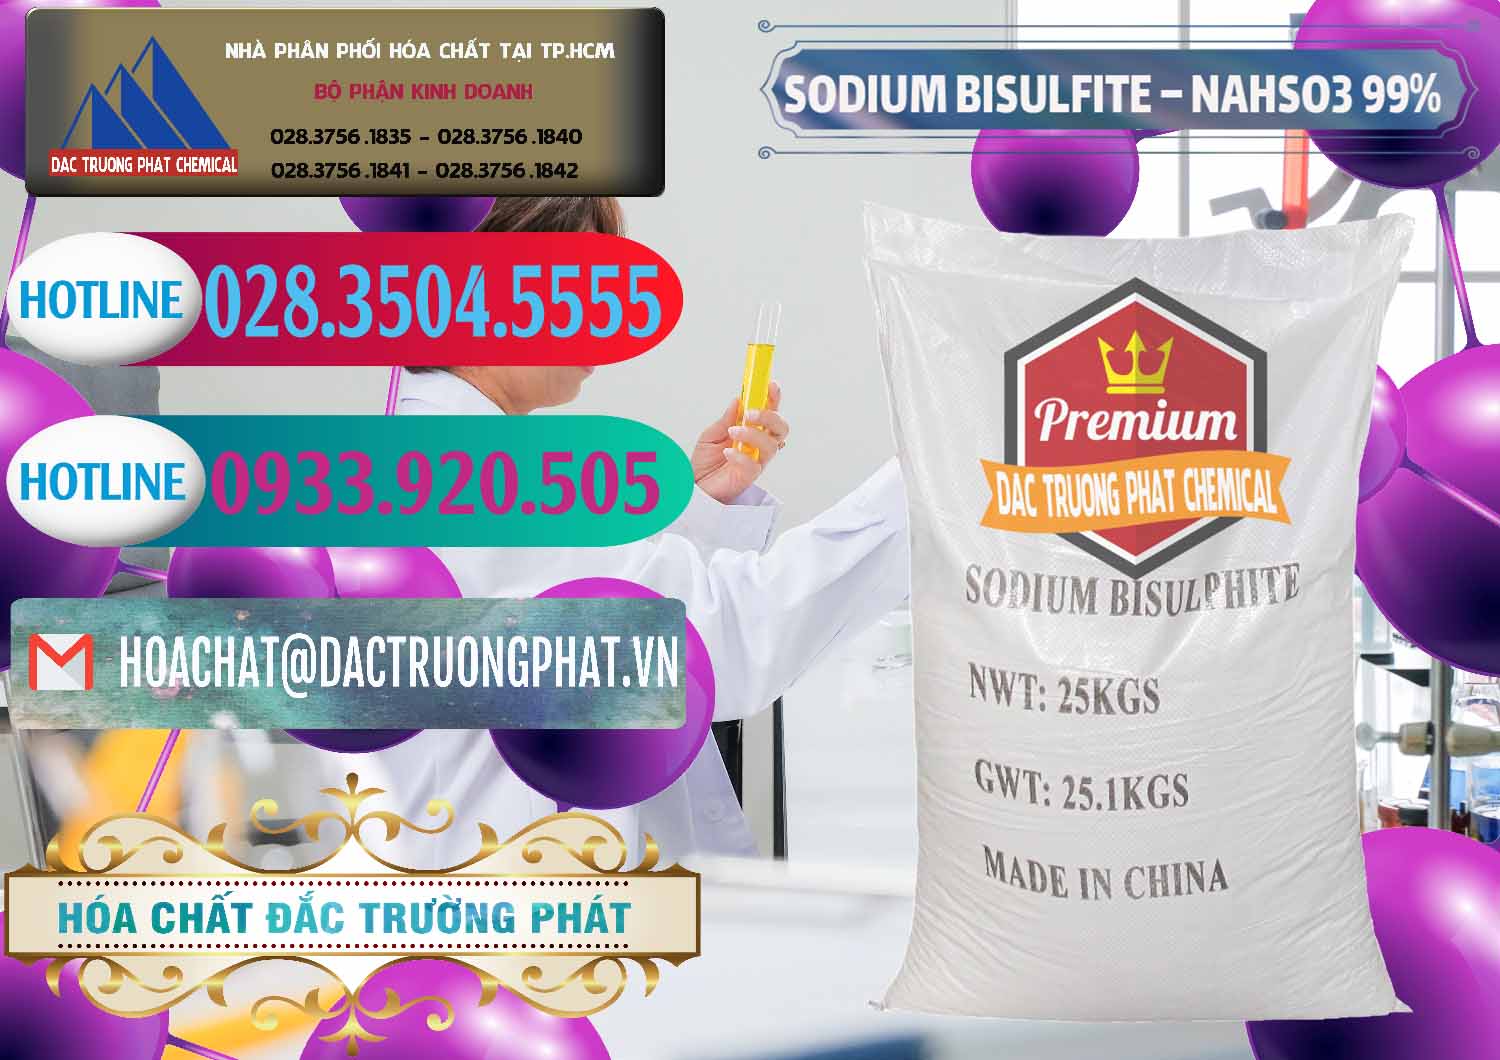 Công ty cung cấp & bán Sodium Bisulfite – NAHSO3 Trung Quốc China - 0140 - Công ty cung cấp _ bán hóa chất tại TP.HCM - truongphat.vn